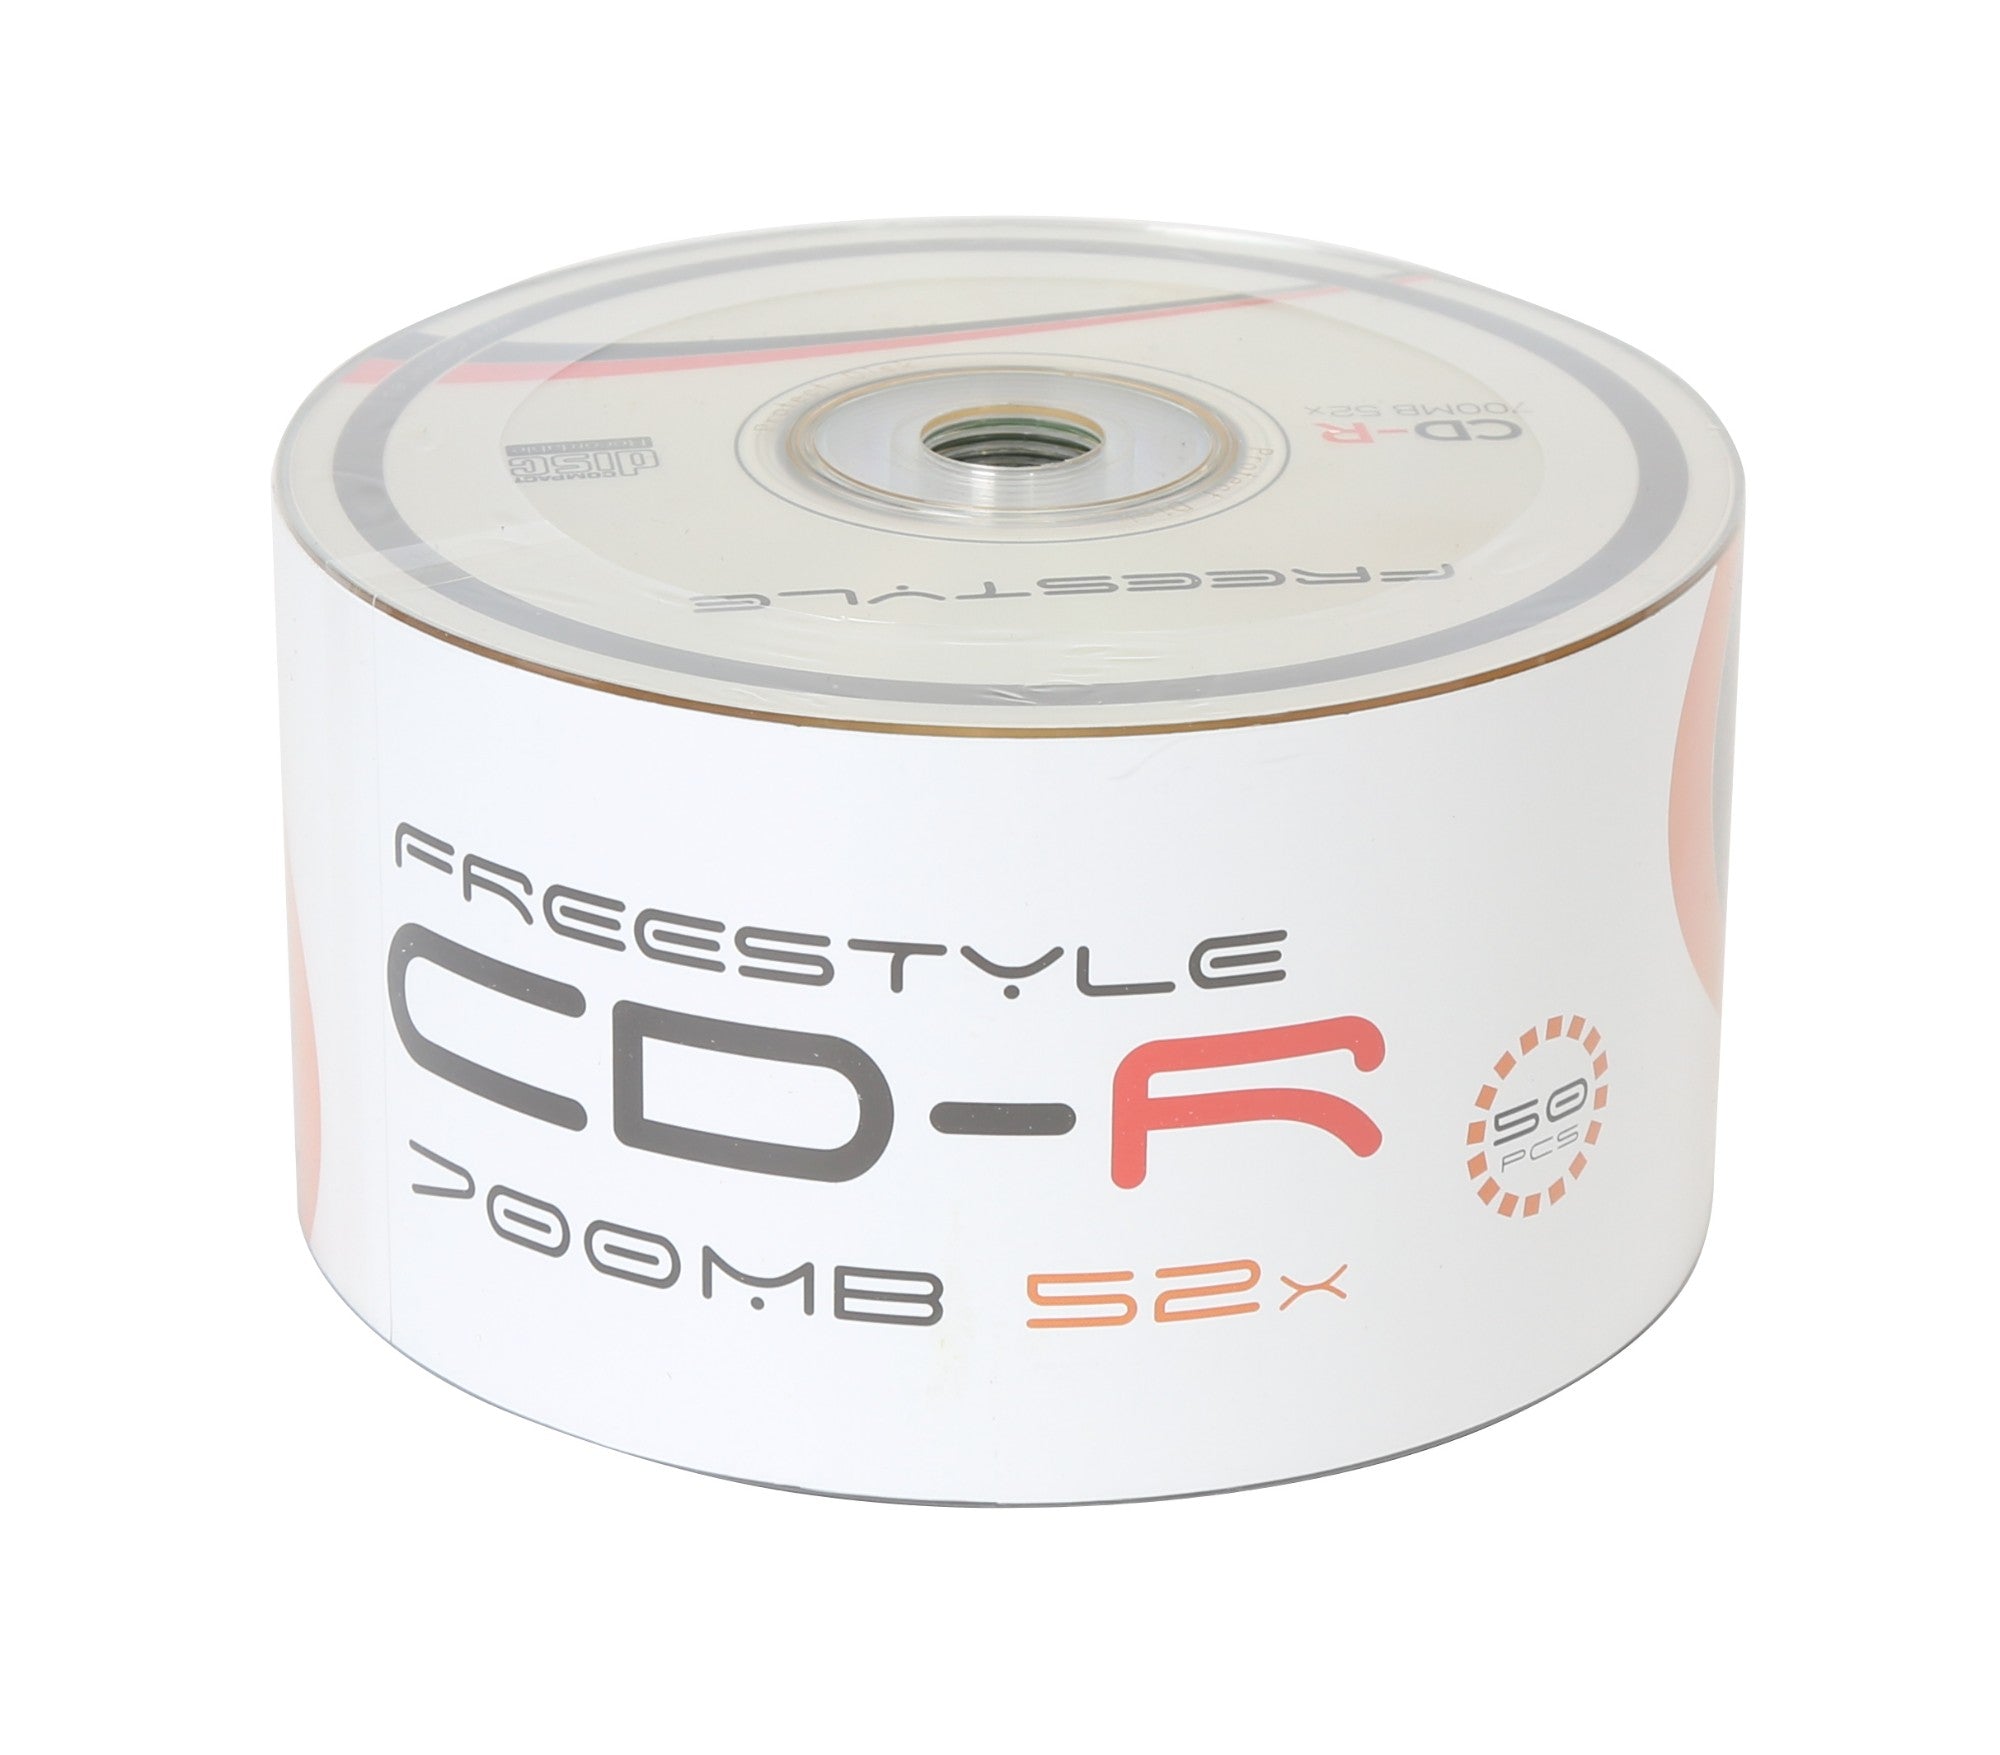 CD-R (x50 pack)